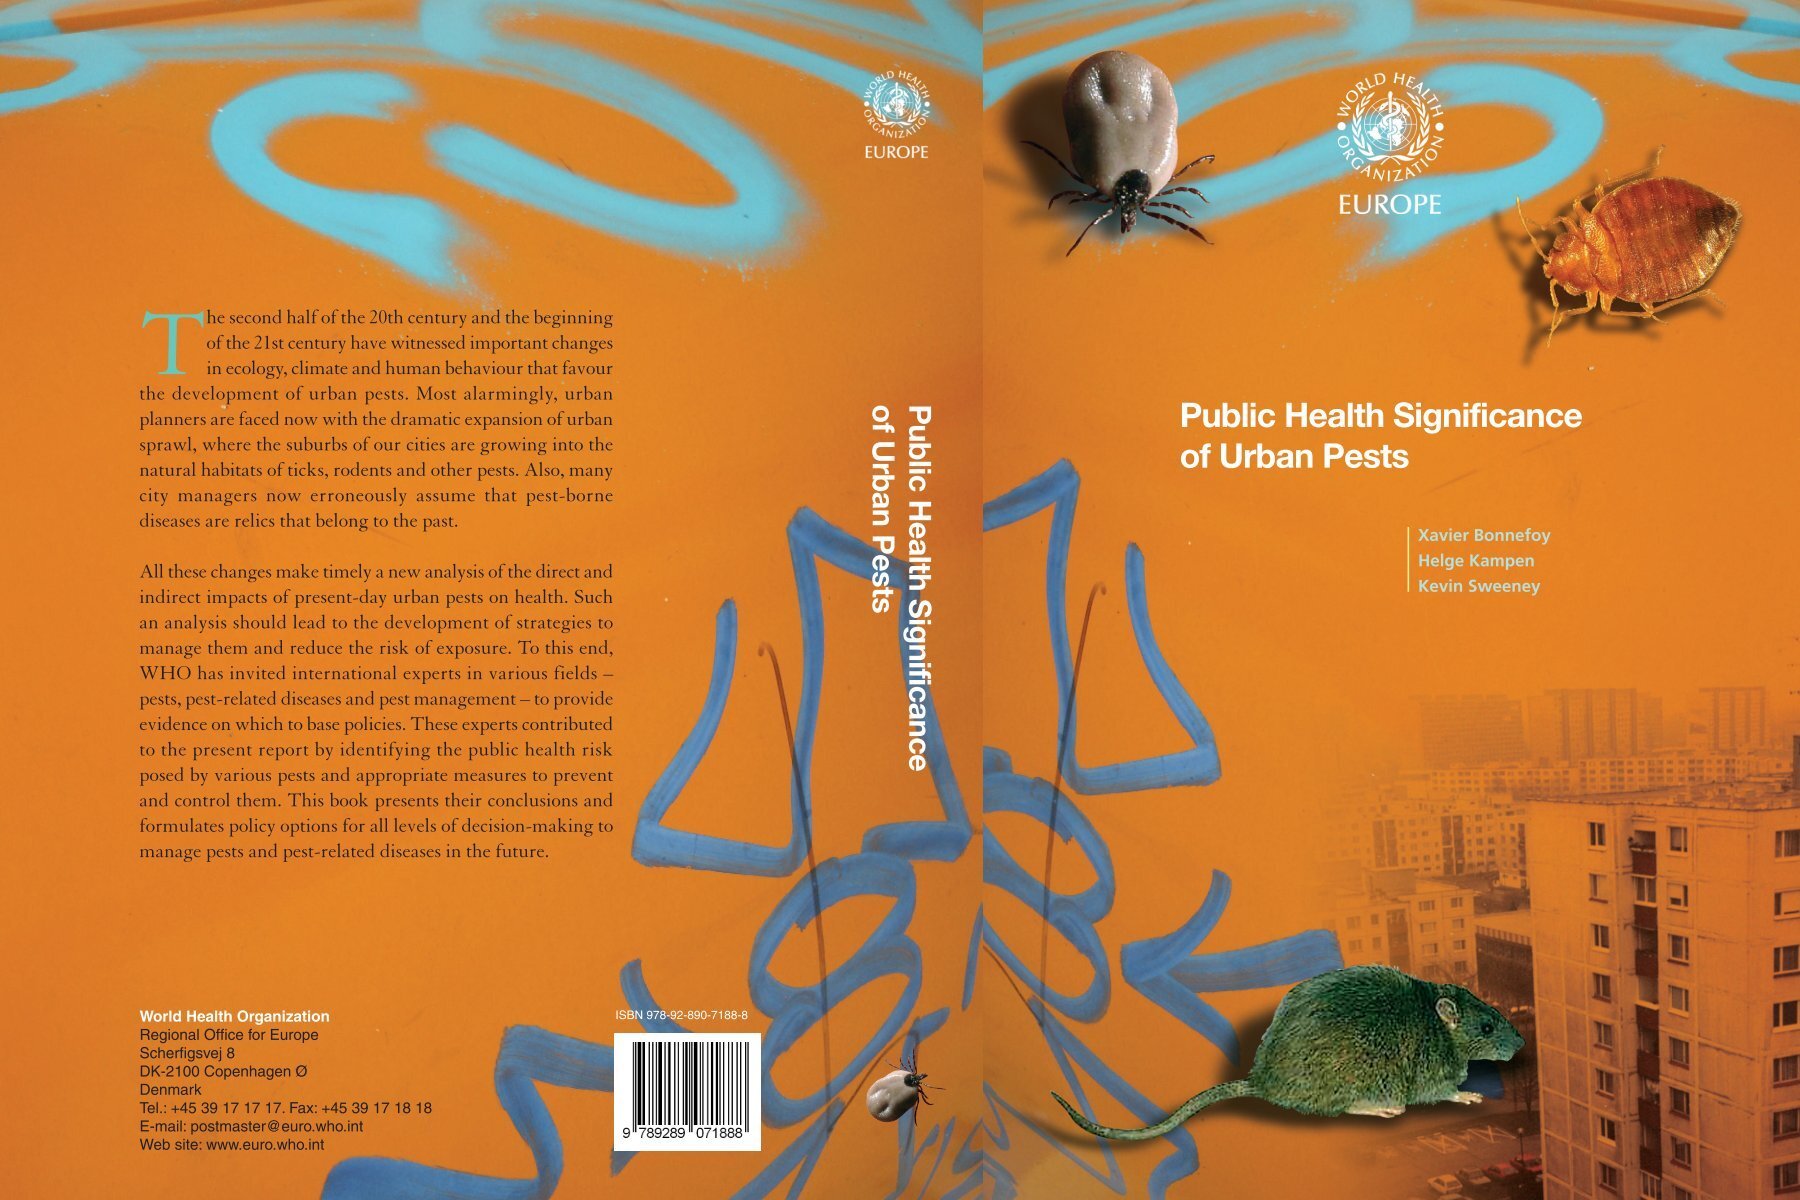 Public Health Significance of Urban Pests - Sociedad EspaÃ±ola de